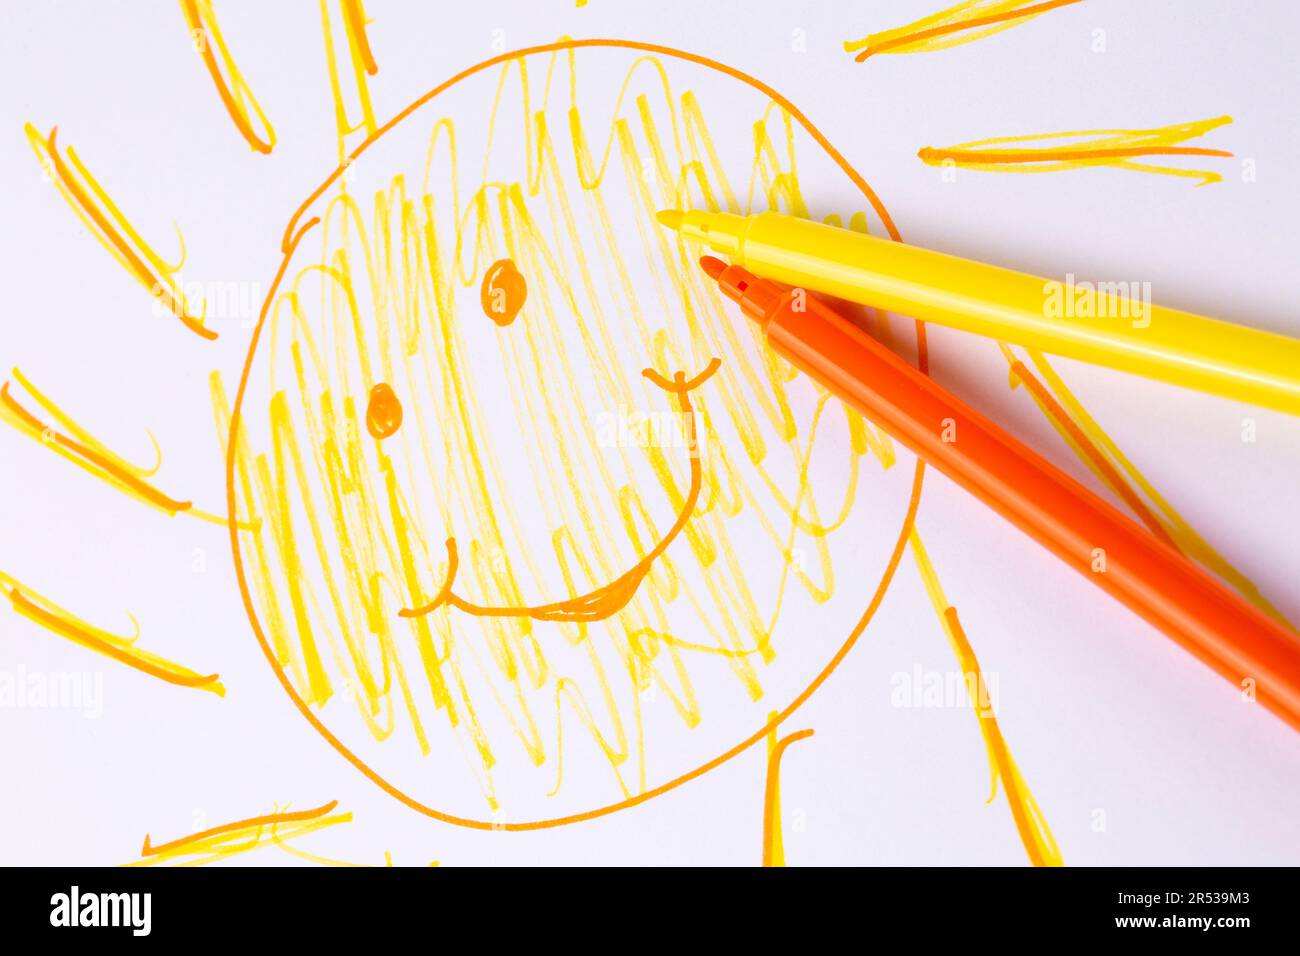 Soleil smiley dessiné sur du papier avec des peintures de couleur Banque D'Images